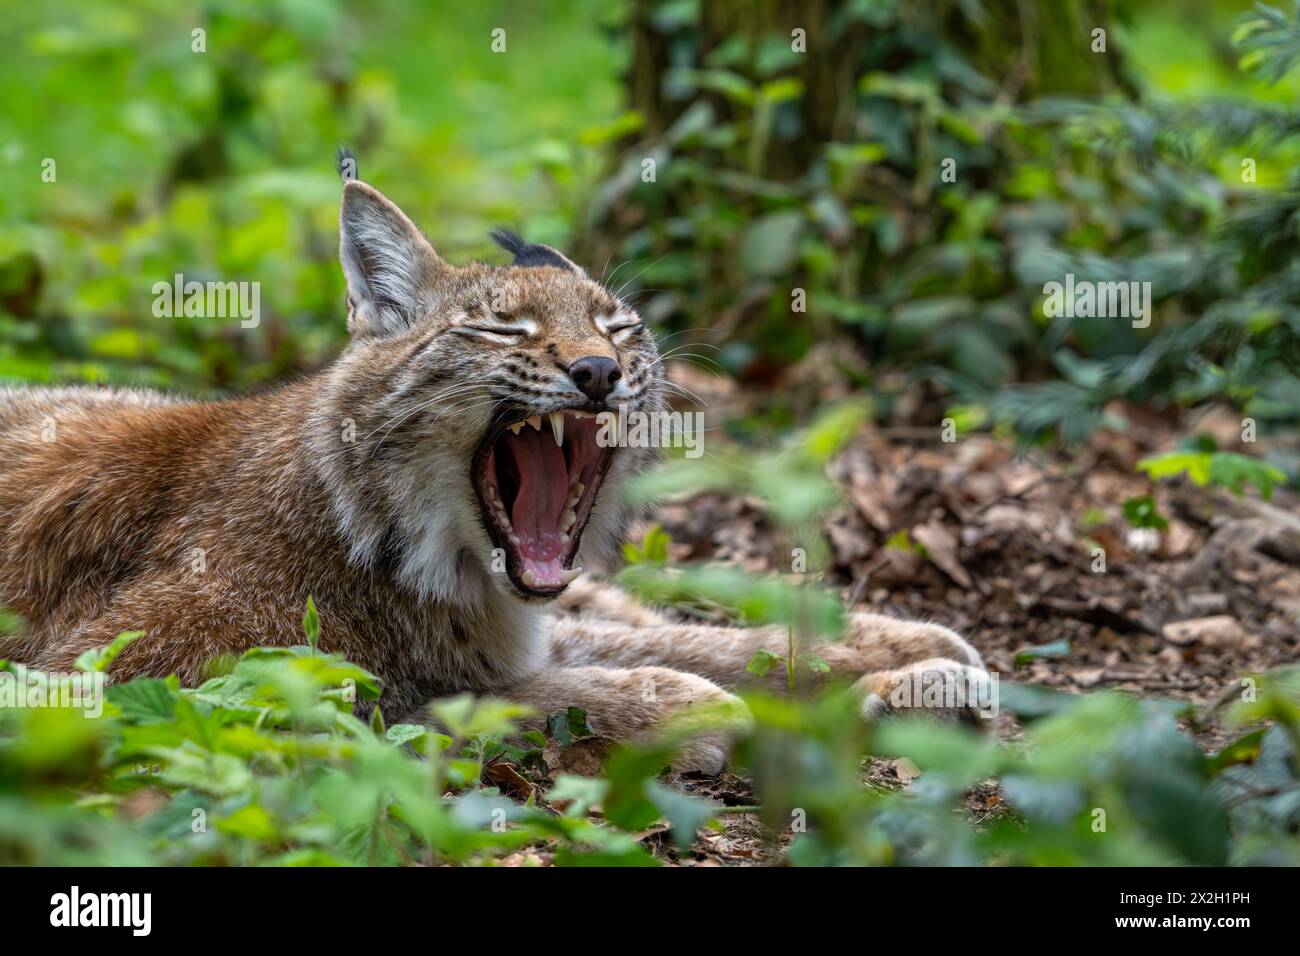 Lynx eurasien endormi (Lynx lynx) bâillant et montrant de grands crocs / canines dans le fourré de forêt Banque D'Images